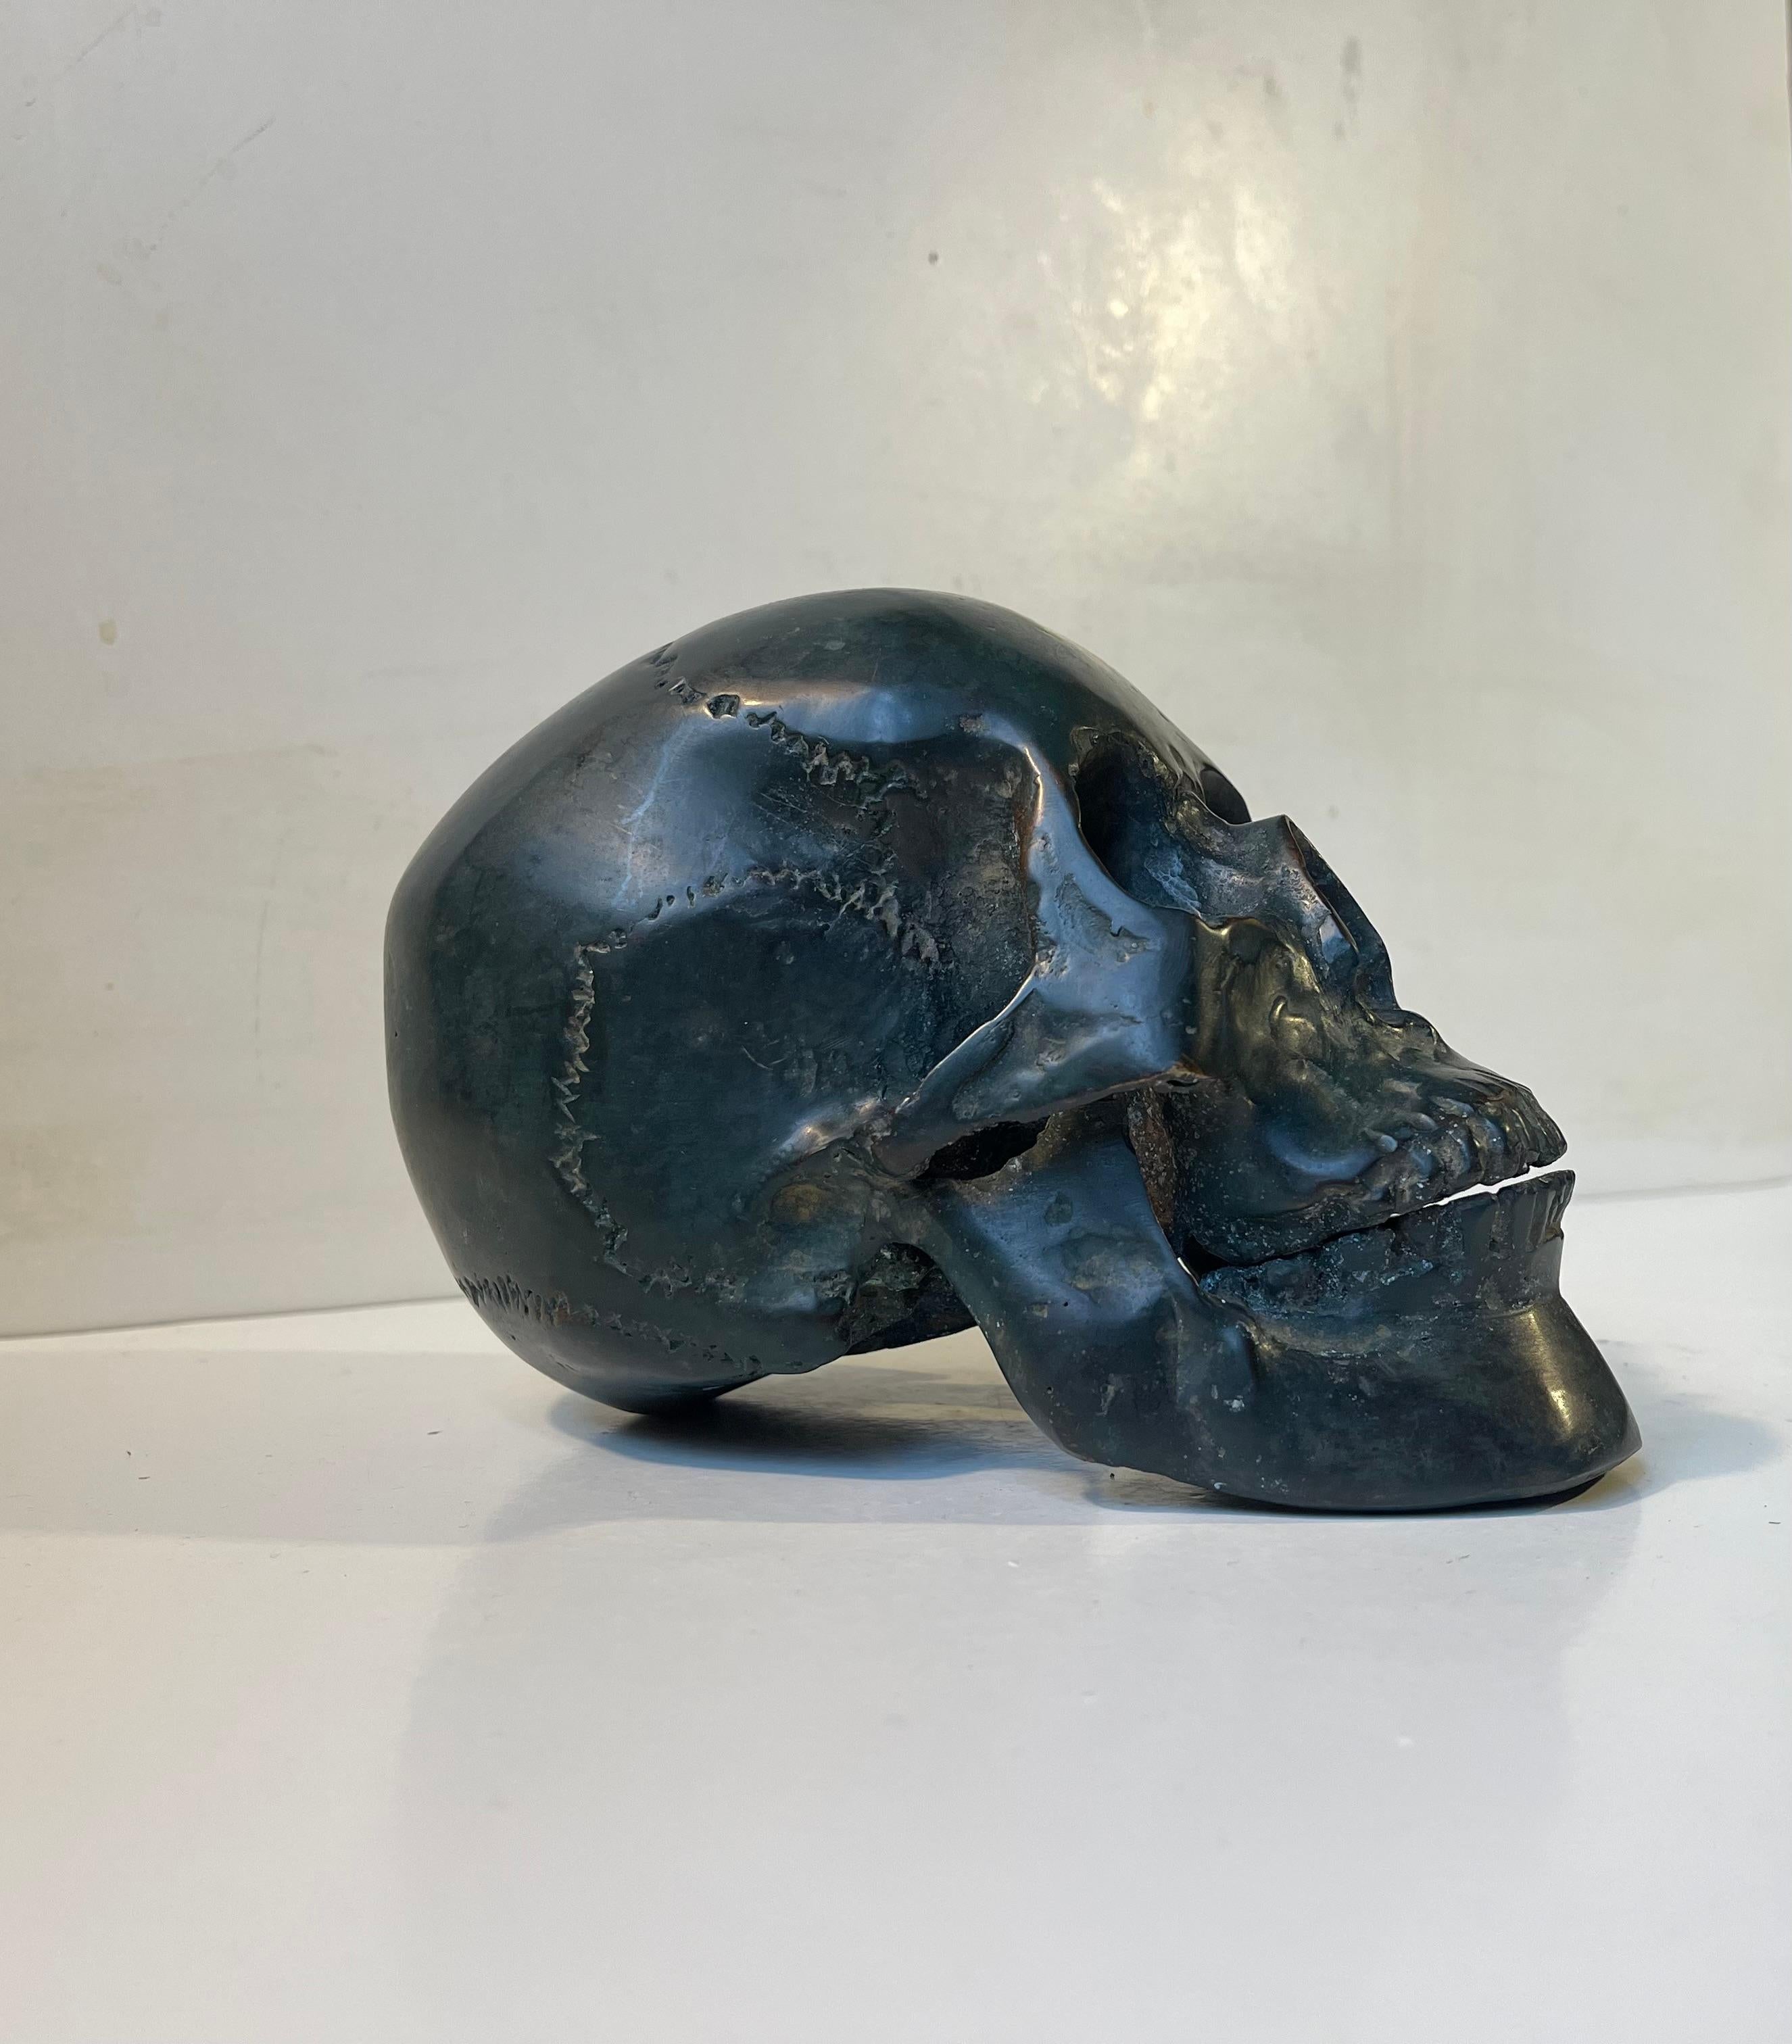 Modèle moulé à l'échelle 1:1 d'un crâne humain en bronze patiné. Il a été réalisé à partir d'un moulage d'un véritable crâne humain, probablement de sexe féminin, et est complet avec les dents, la mâchoire inférieure et la mâchoire supérieure. Cet